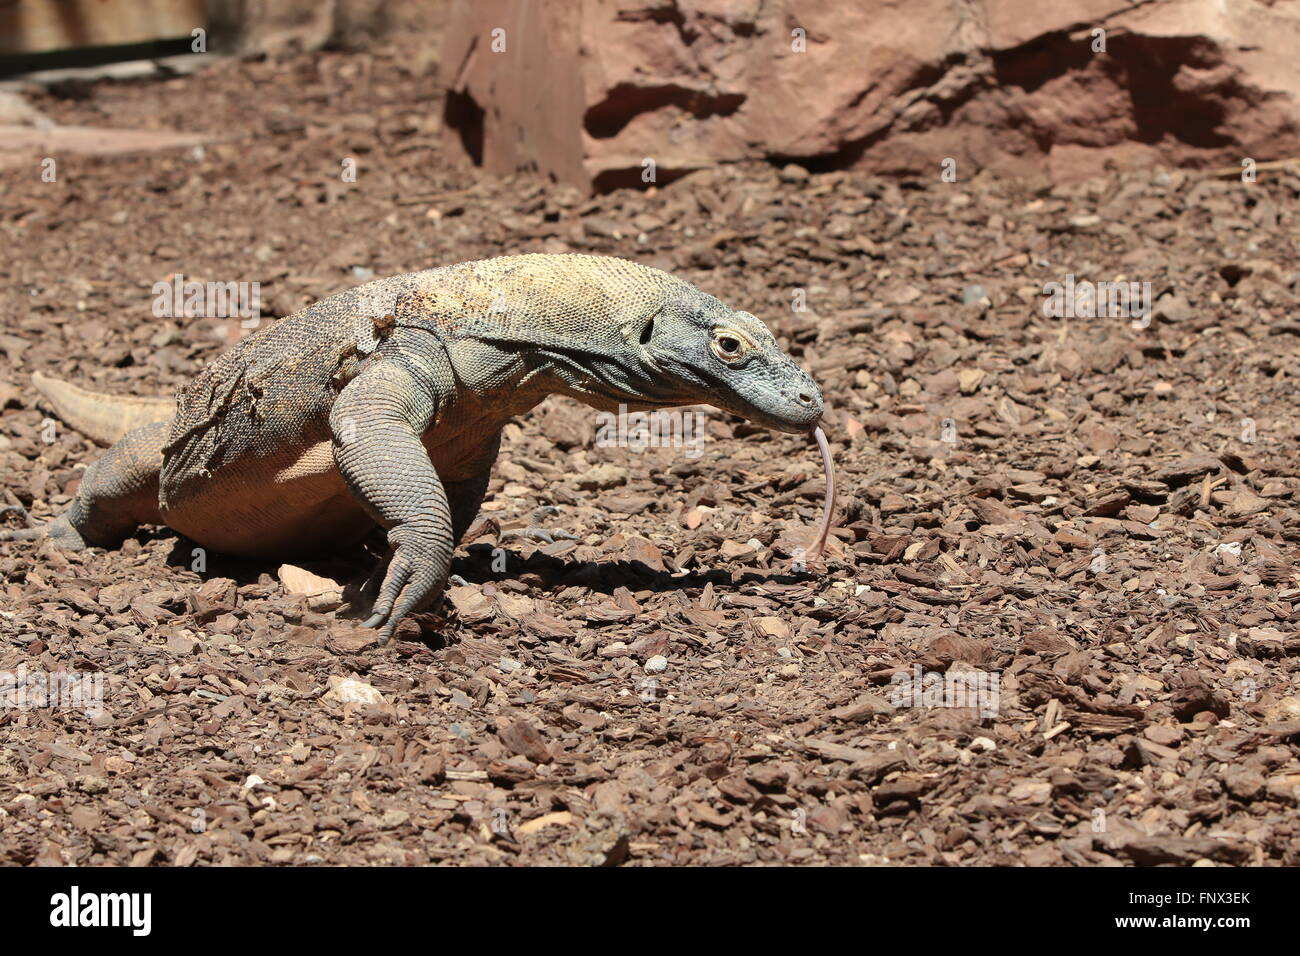 Komodo Dragon (Varanus komodoensis), side view Stock Photo